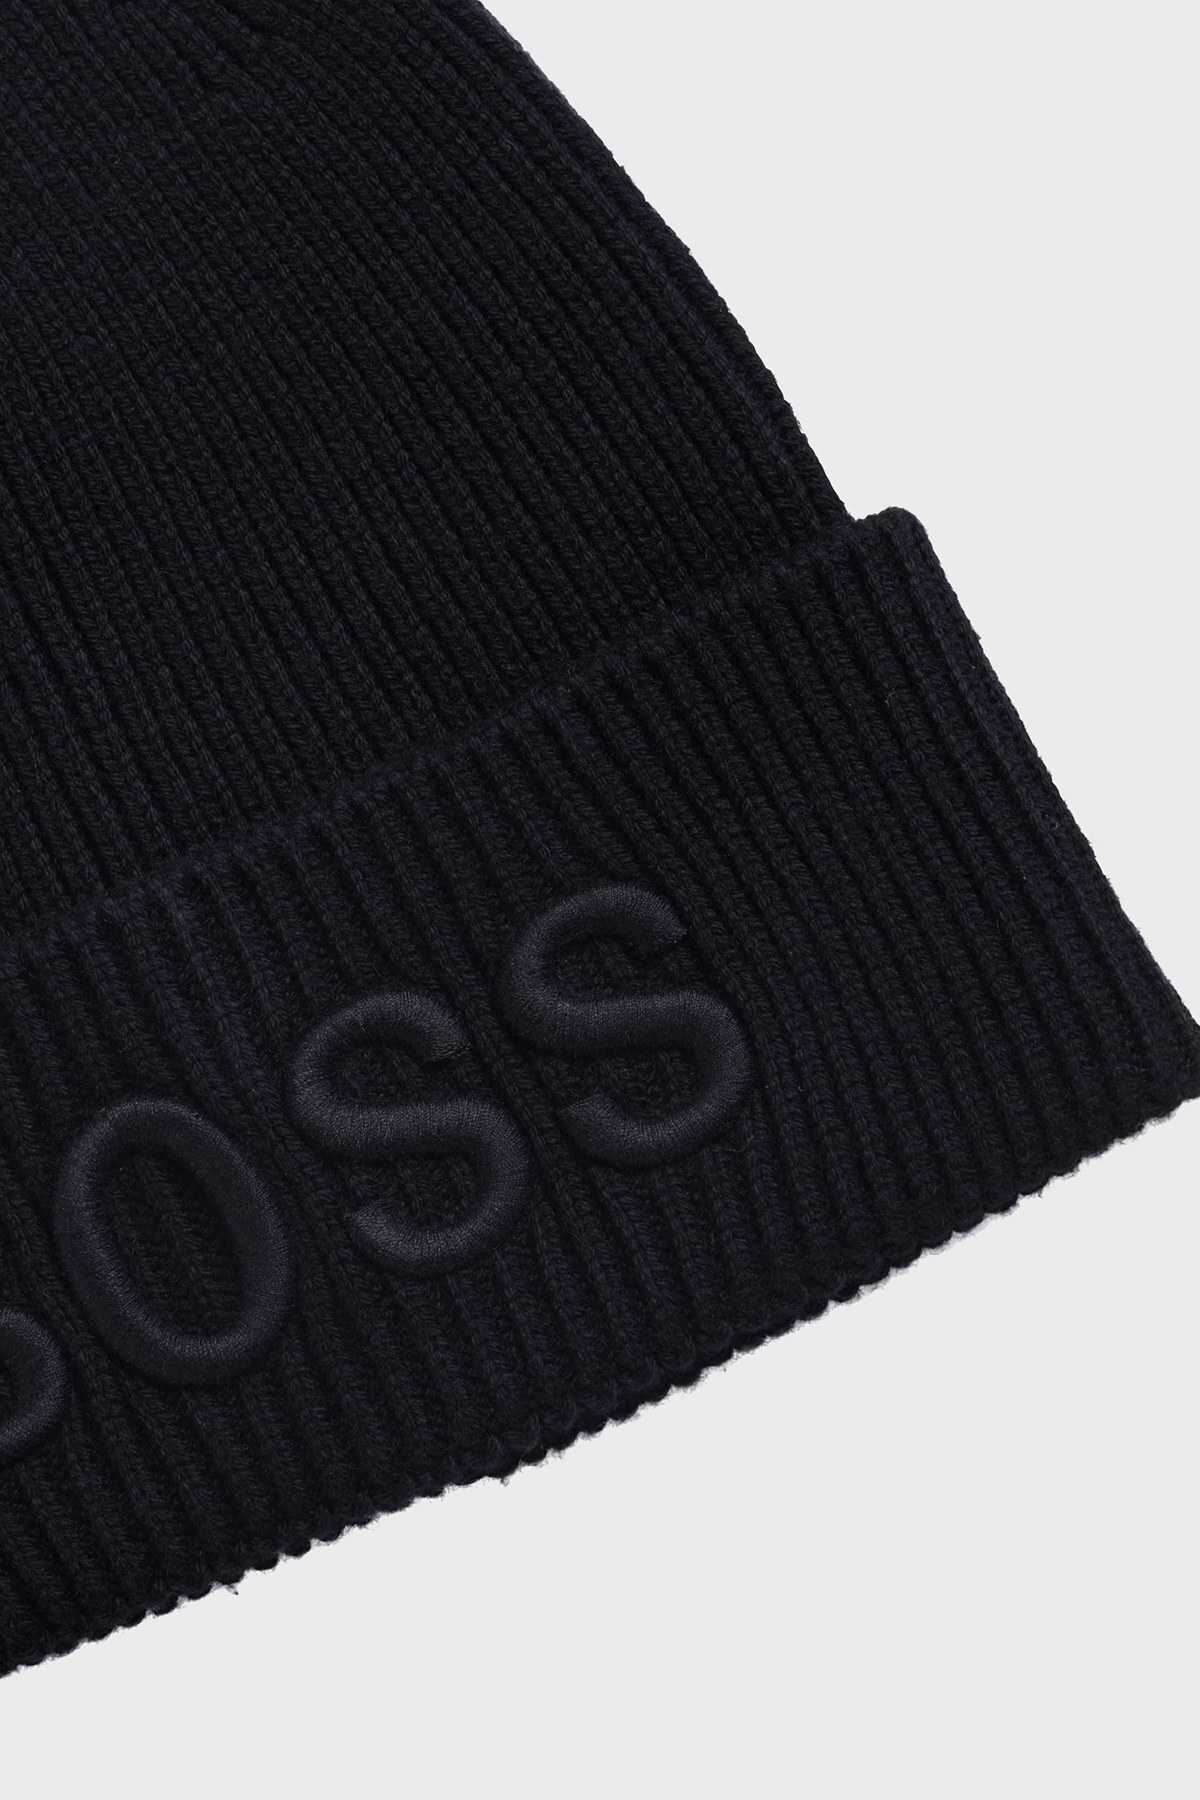 Hugo Boss Logo İşlemeli Yün Karışımlı Erkek Şapka 50444424 404 LACİVERT